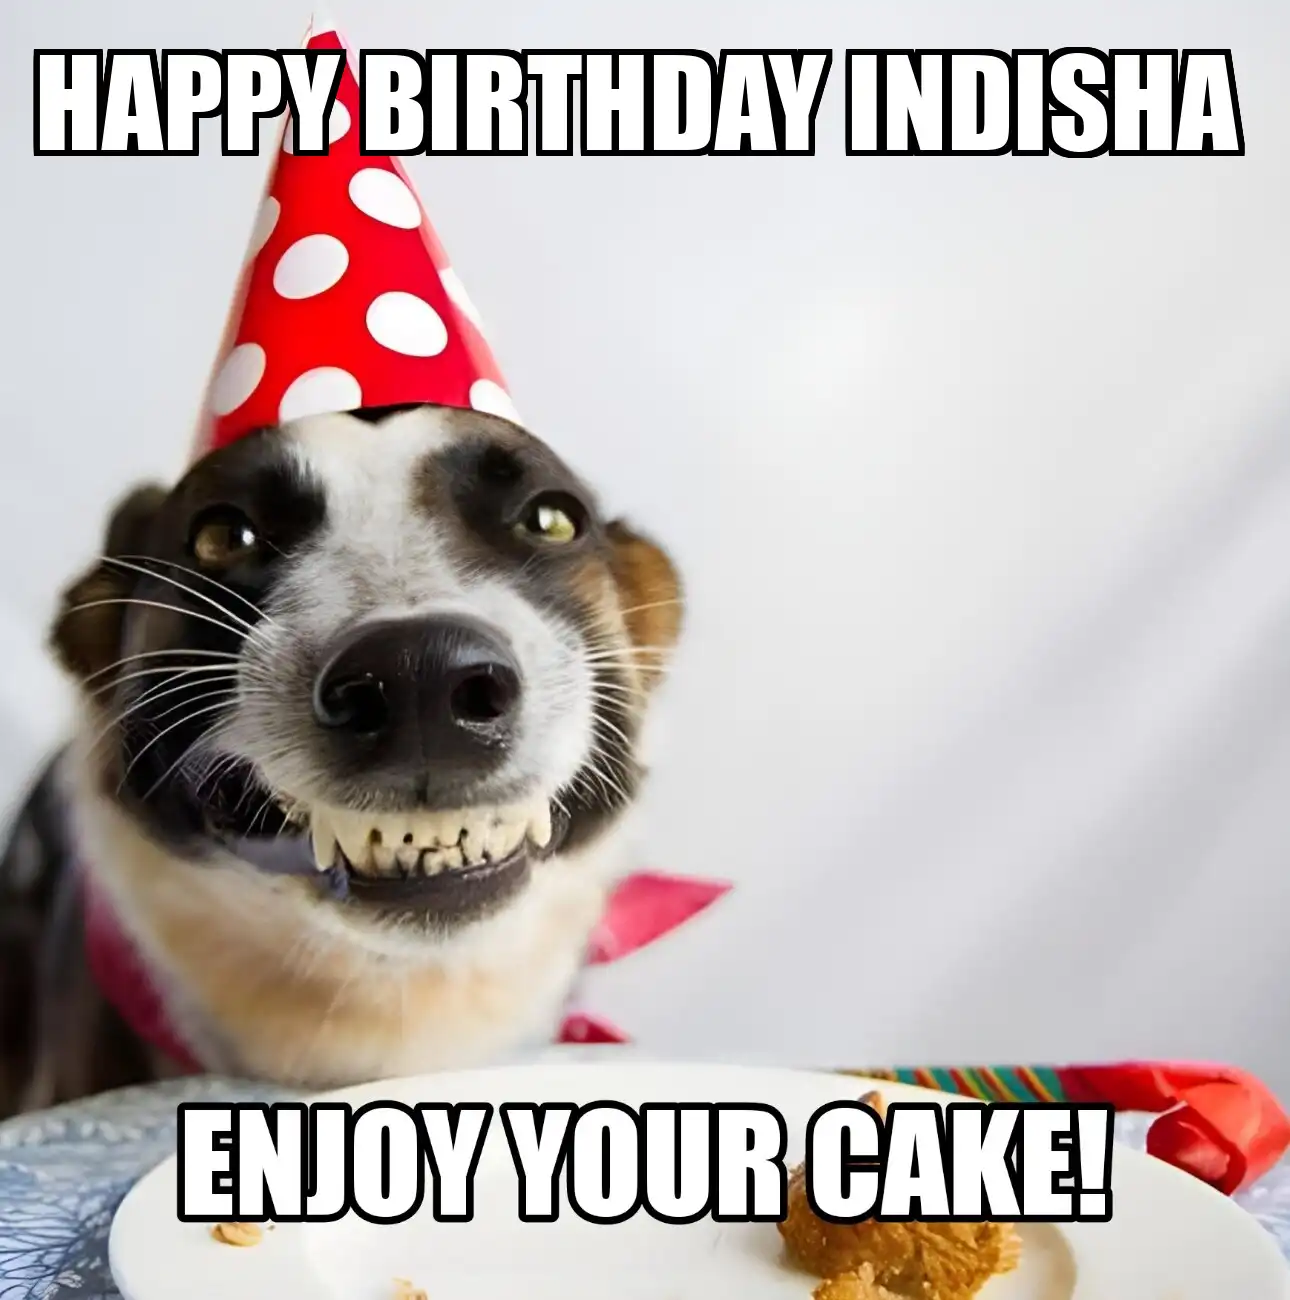 Happy Birthday Indisha Enjoy Your Cake Dog Meme